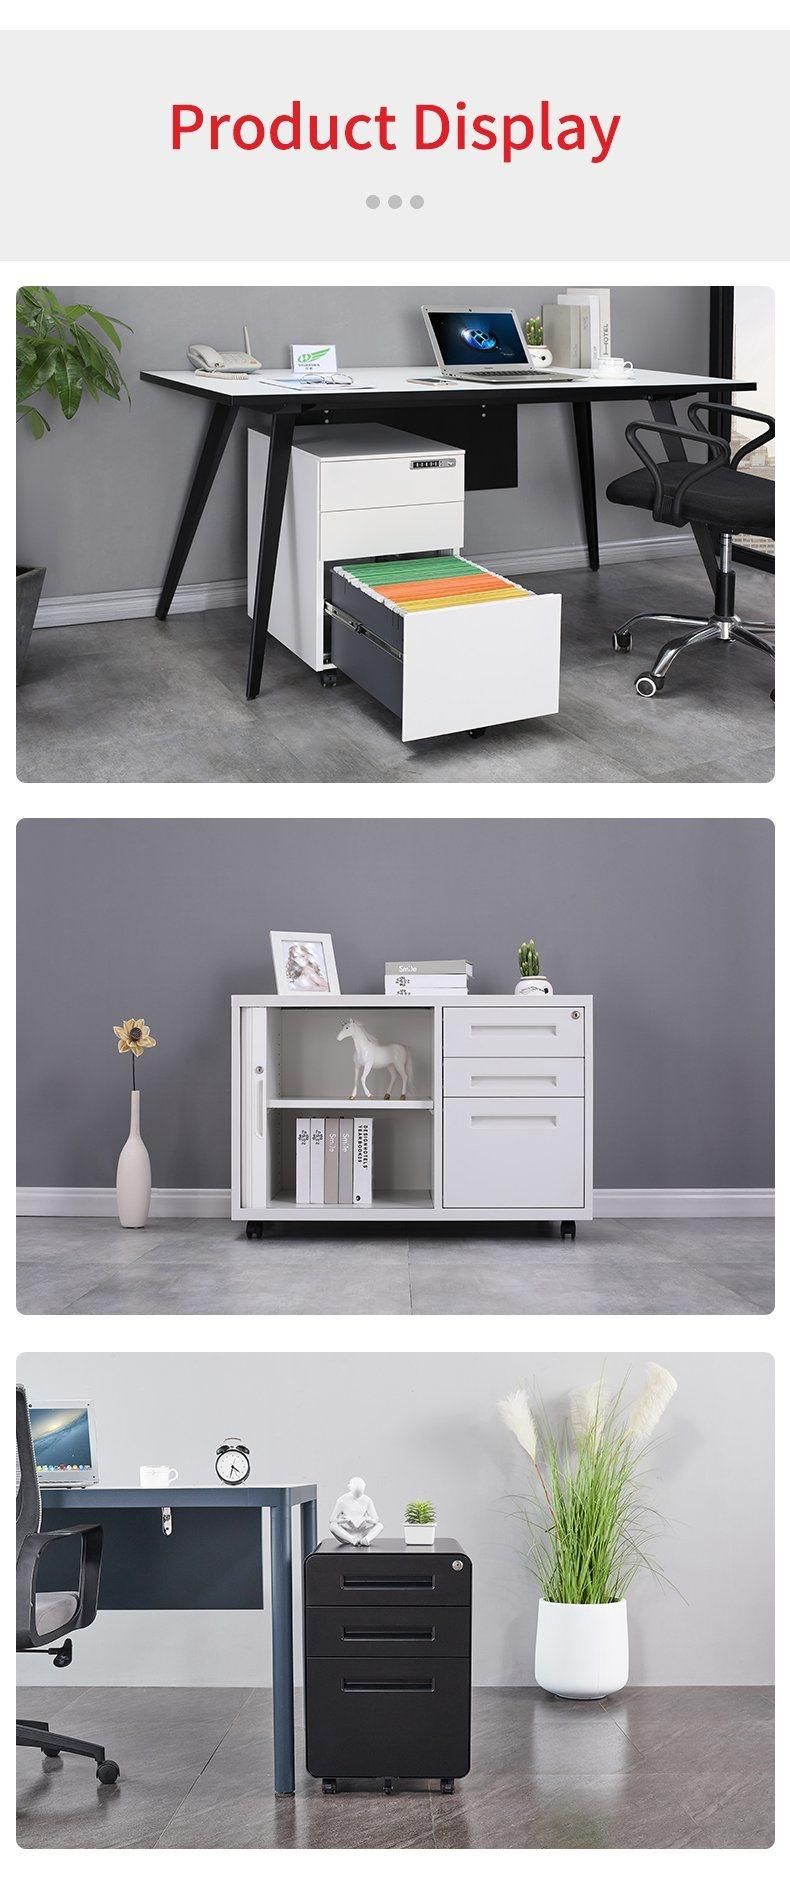 Modern Handle Design Mobile Pedestal Cabinet for Office Home Use